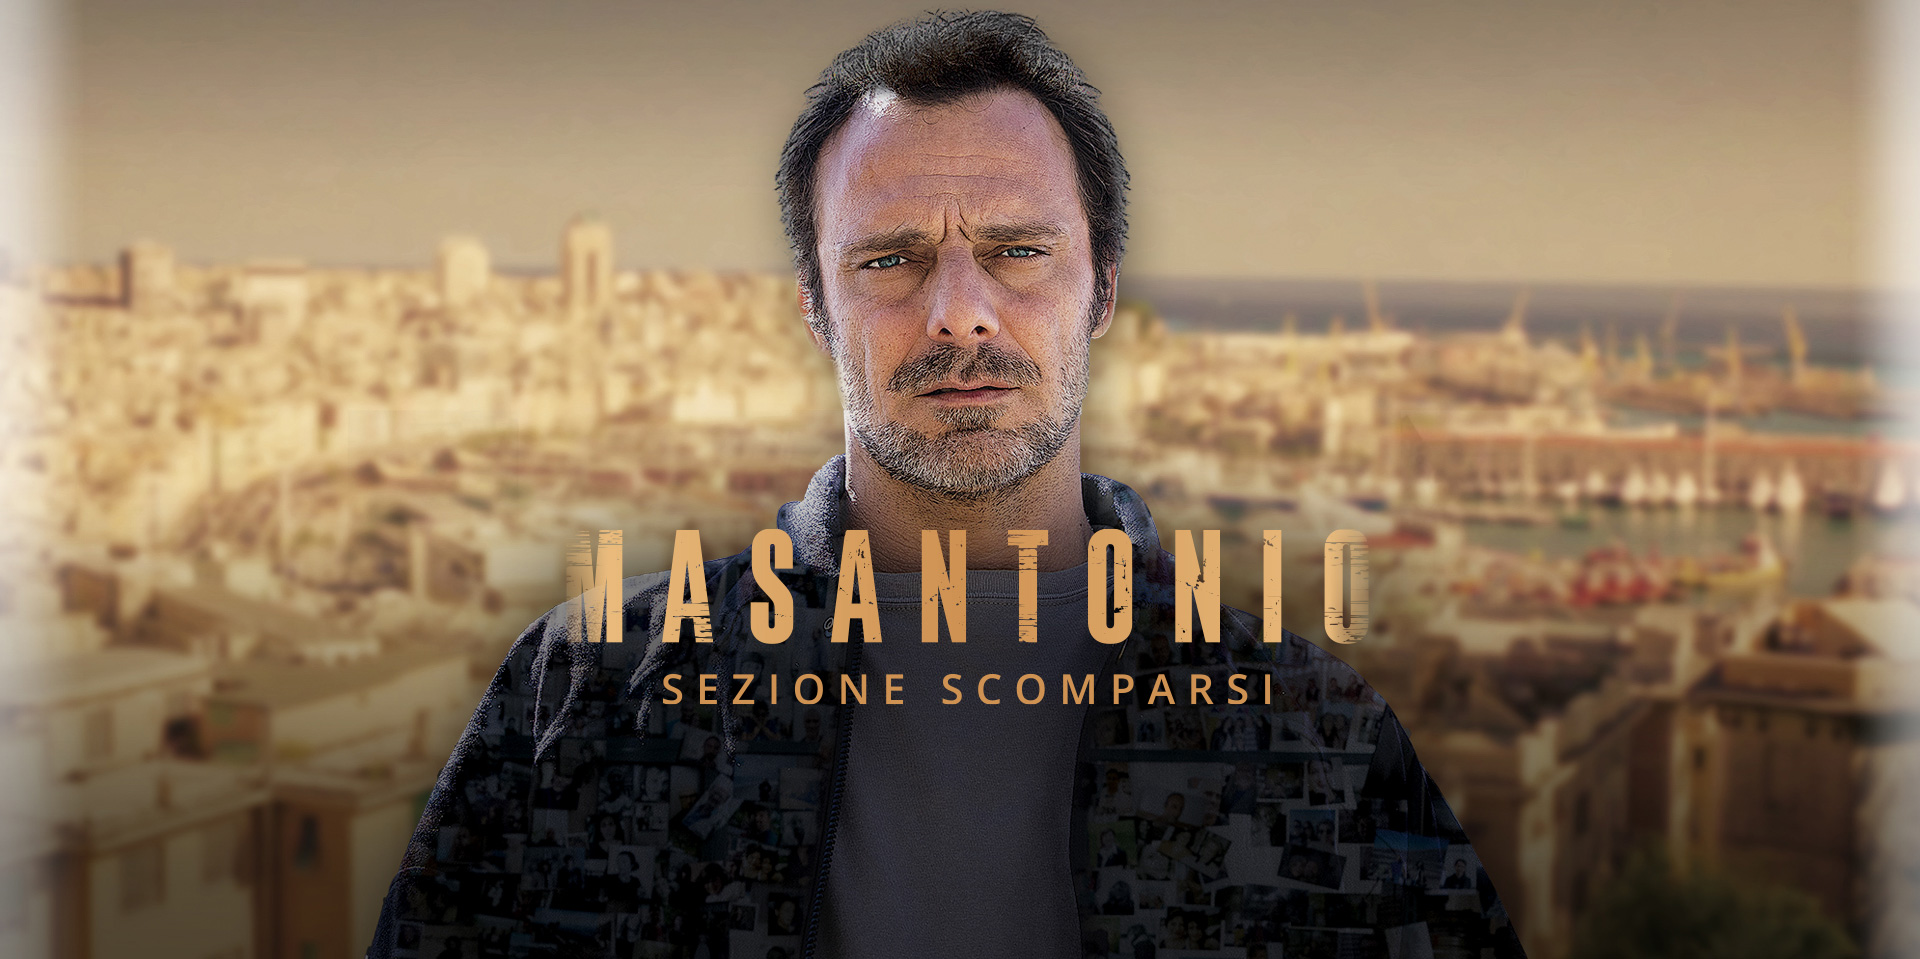 Poster Masantonio - Sezione scomparsi